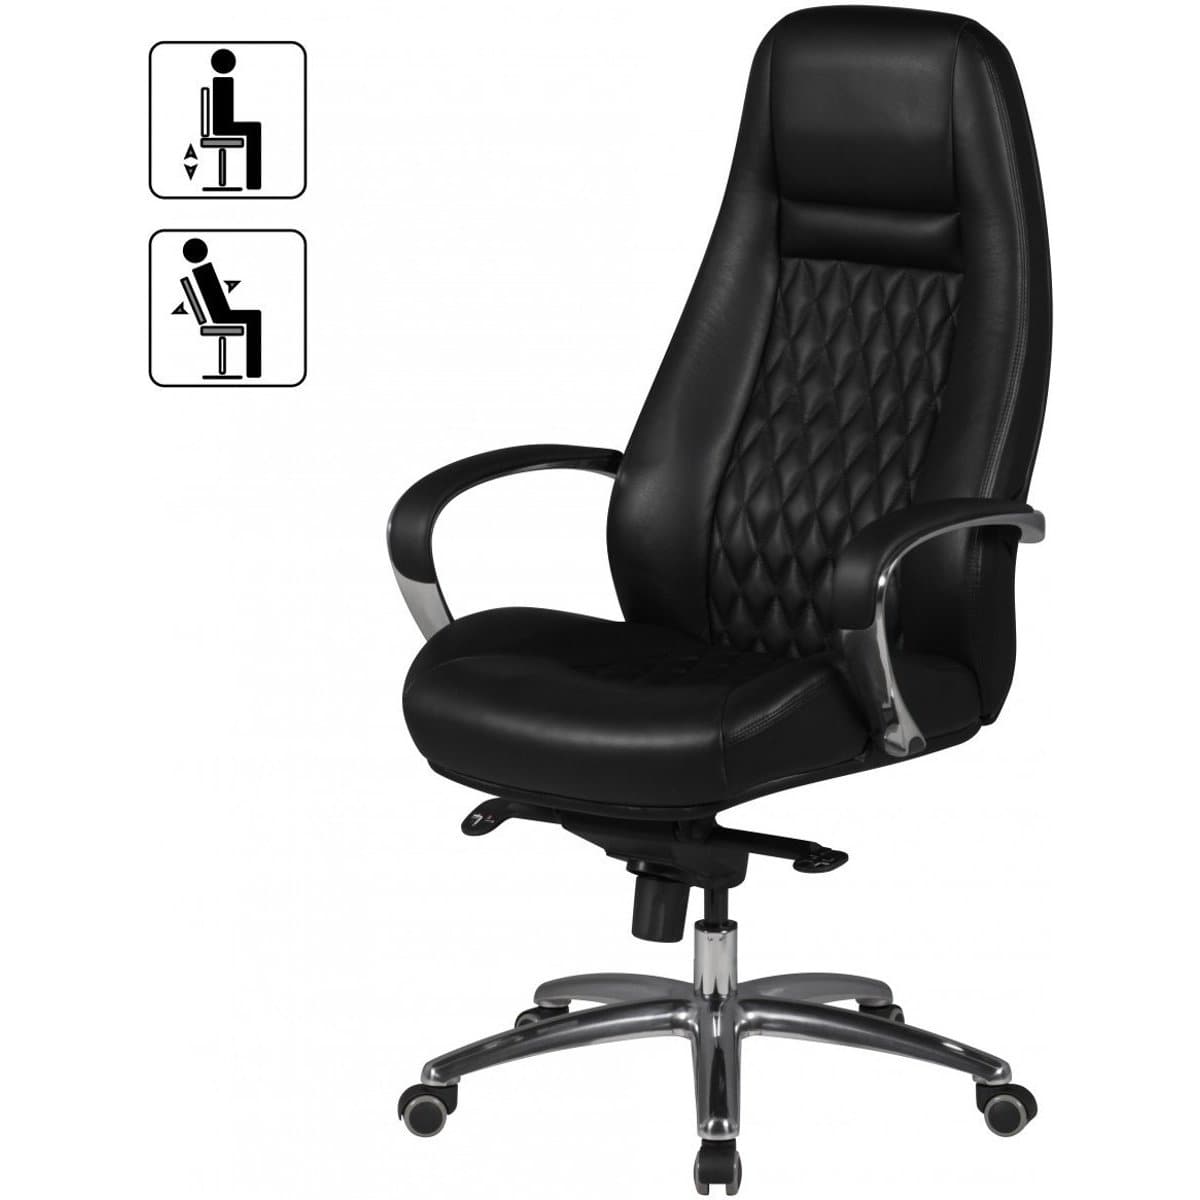 Chaise de bureau en cuir Bronxdale de Nancy - Chaise pivotante en cuir - Chaises de bureau ergonomiques - Chaises de bureau pour adultes